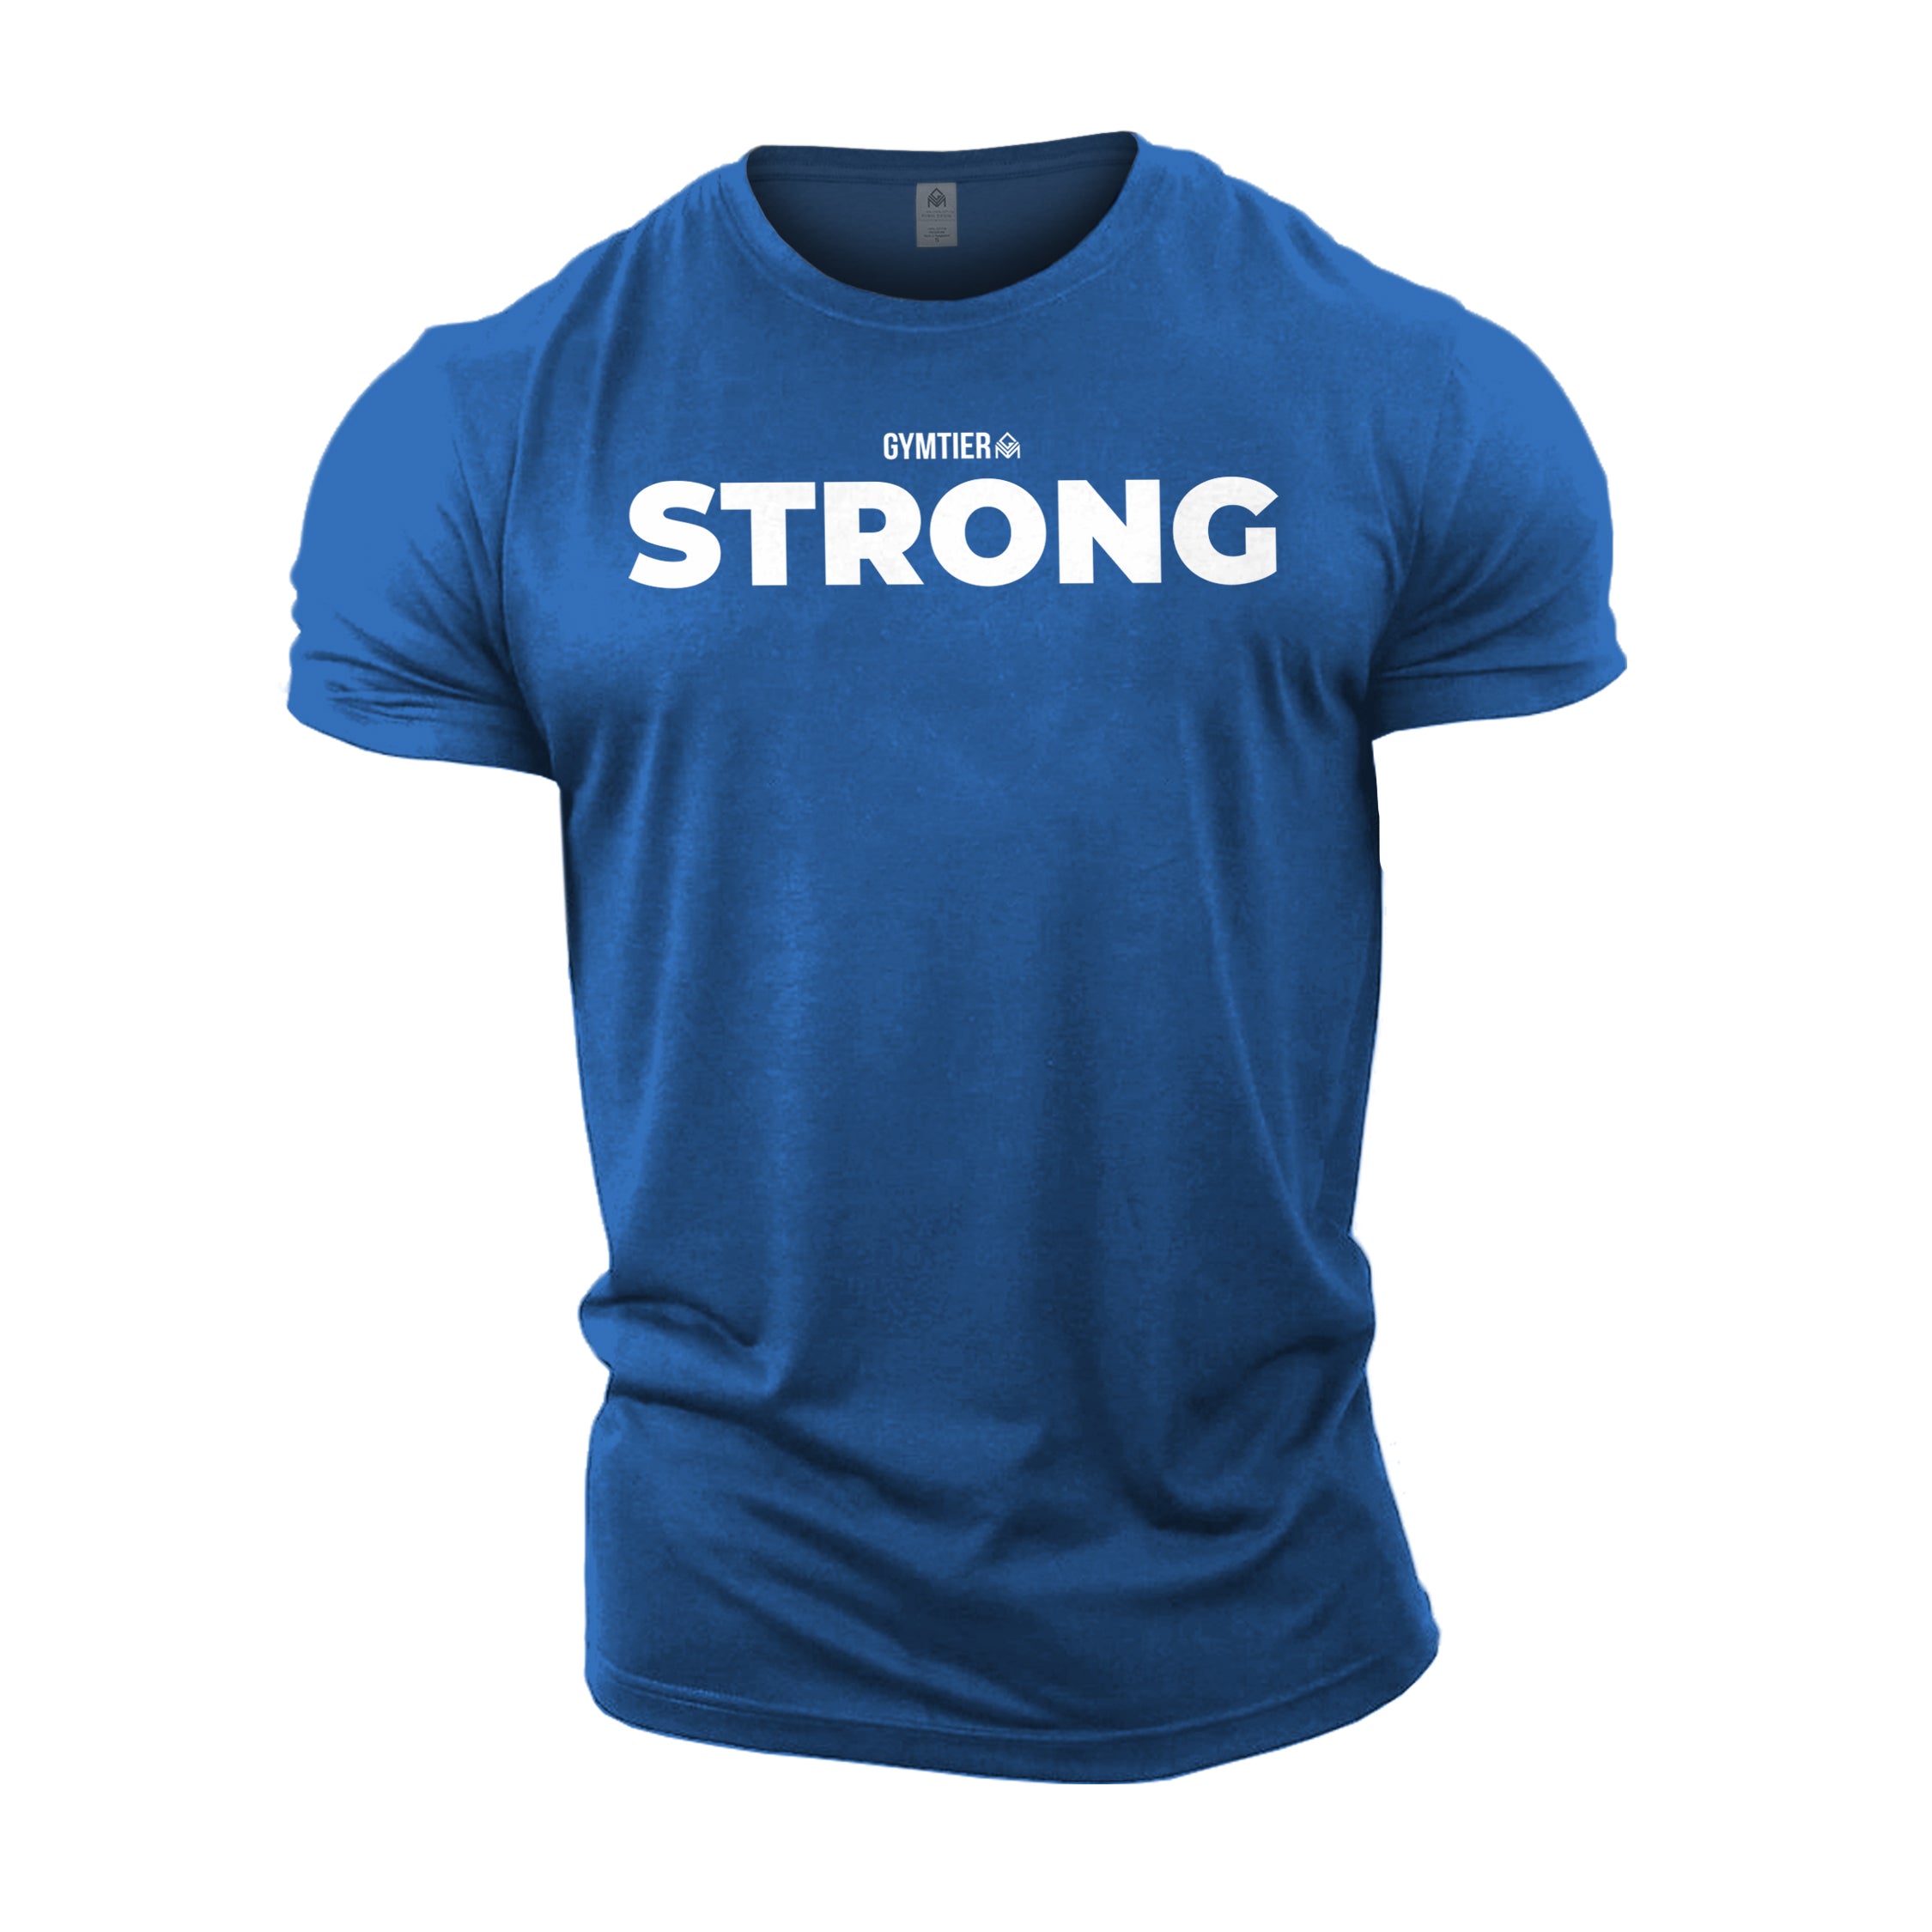 GYMTIER Strong T-Shirt